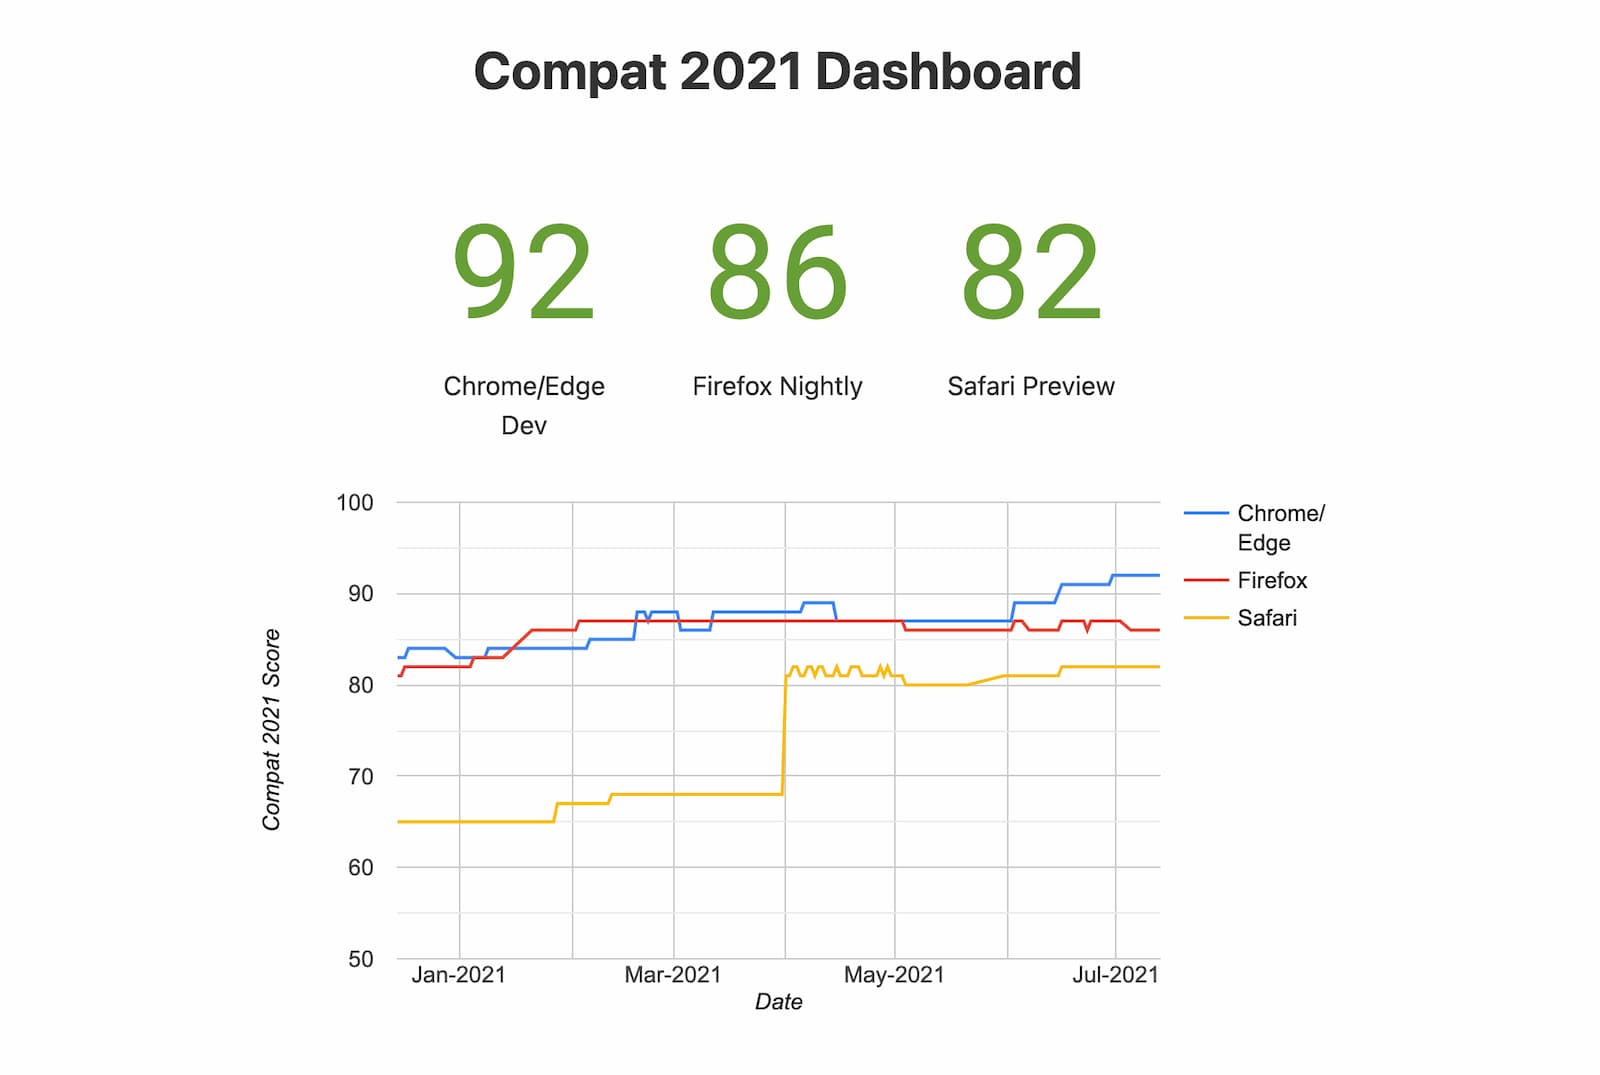 कैप्शन: Compat 2021 डैशबोर्ड (एक्सपेरिमेंट वाले ब्राउज़र) का स्नैपशॉट